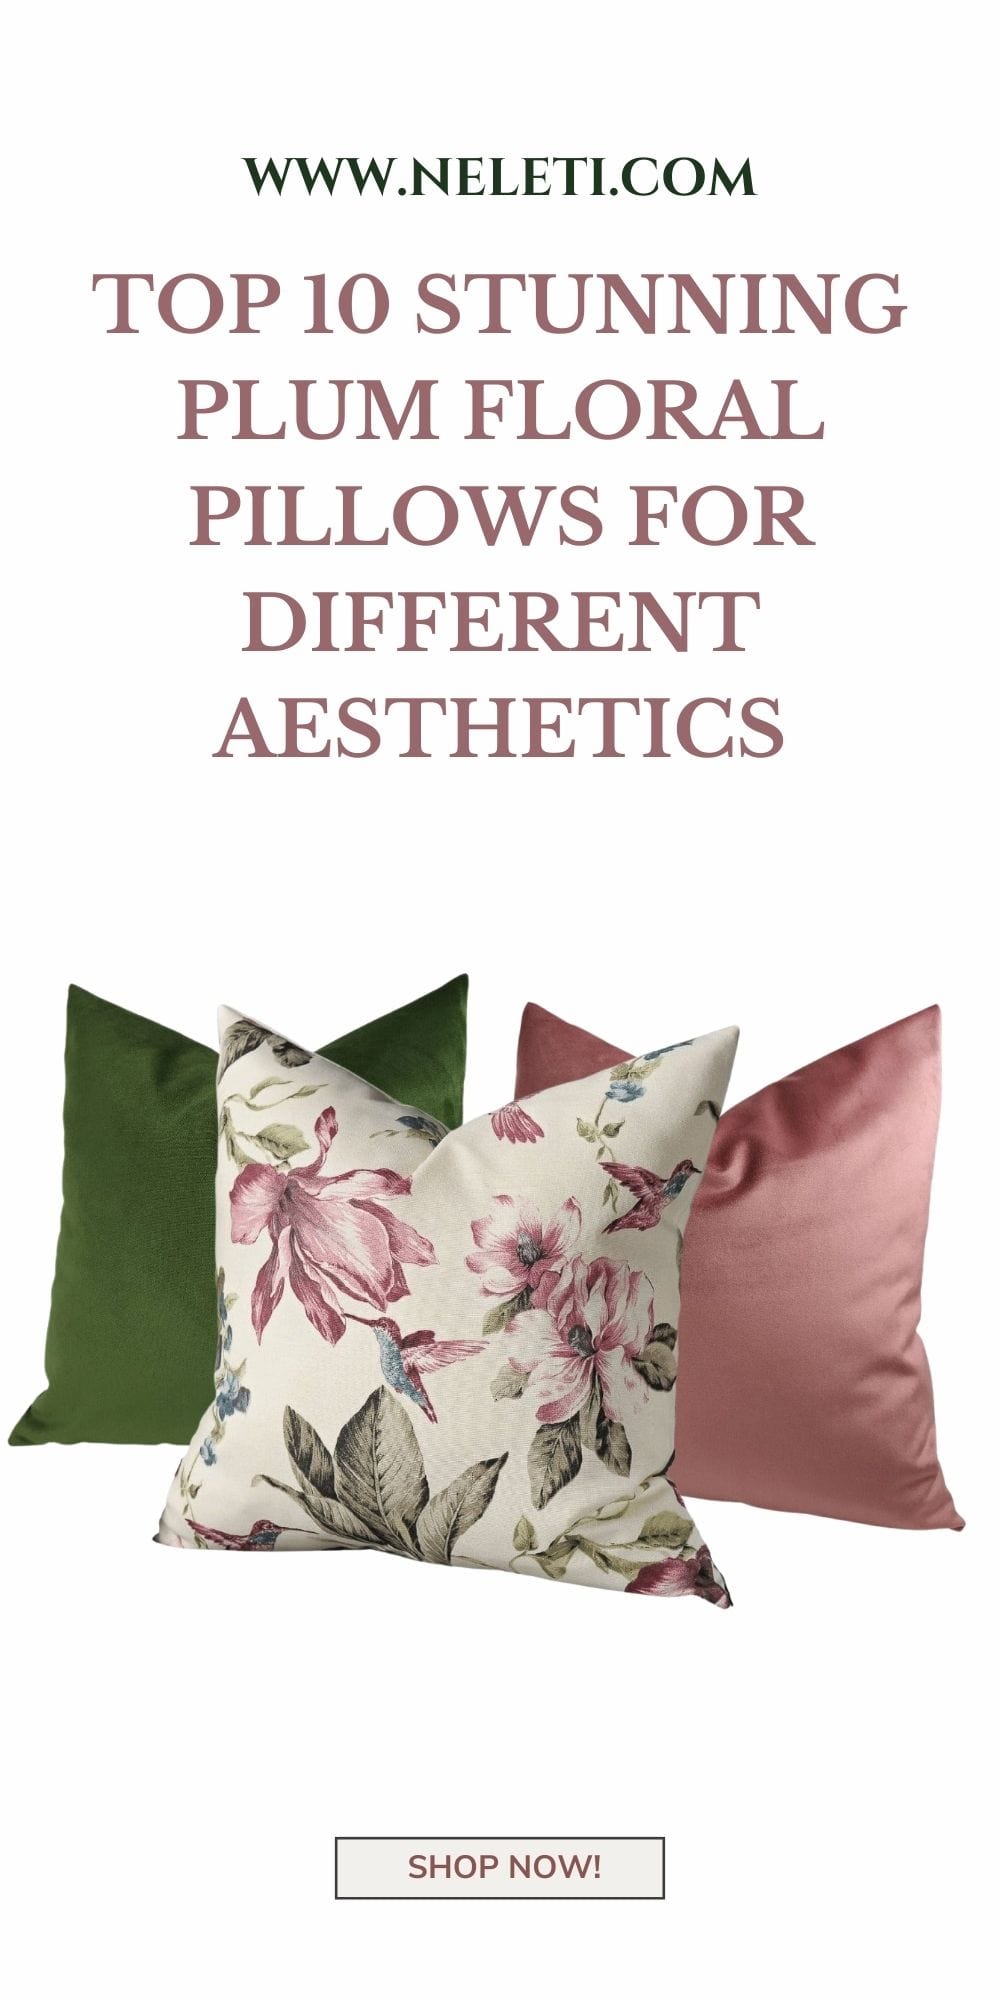 neleti.com-plum-floral-pillows